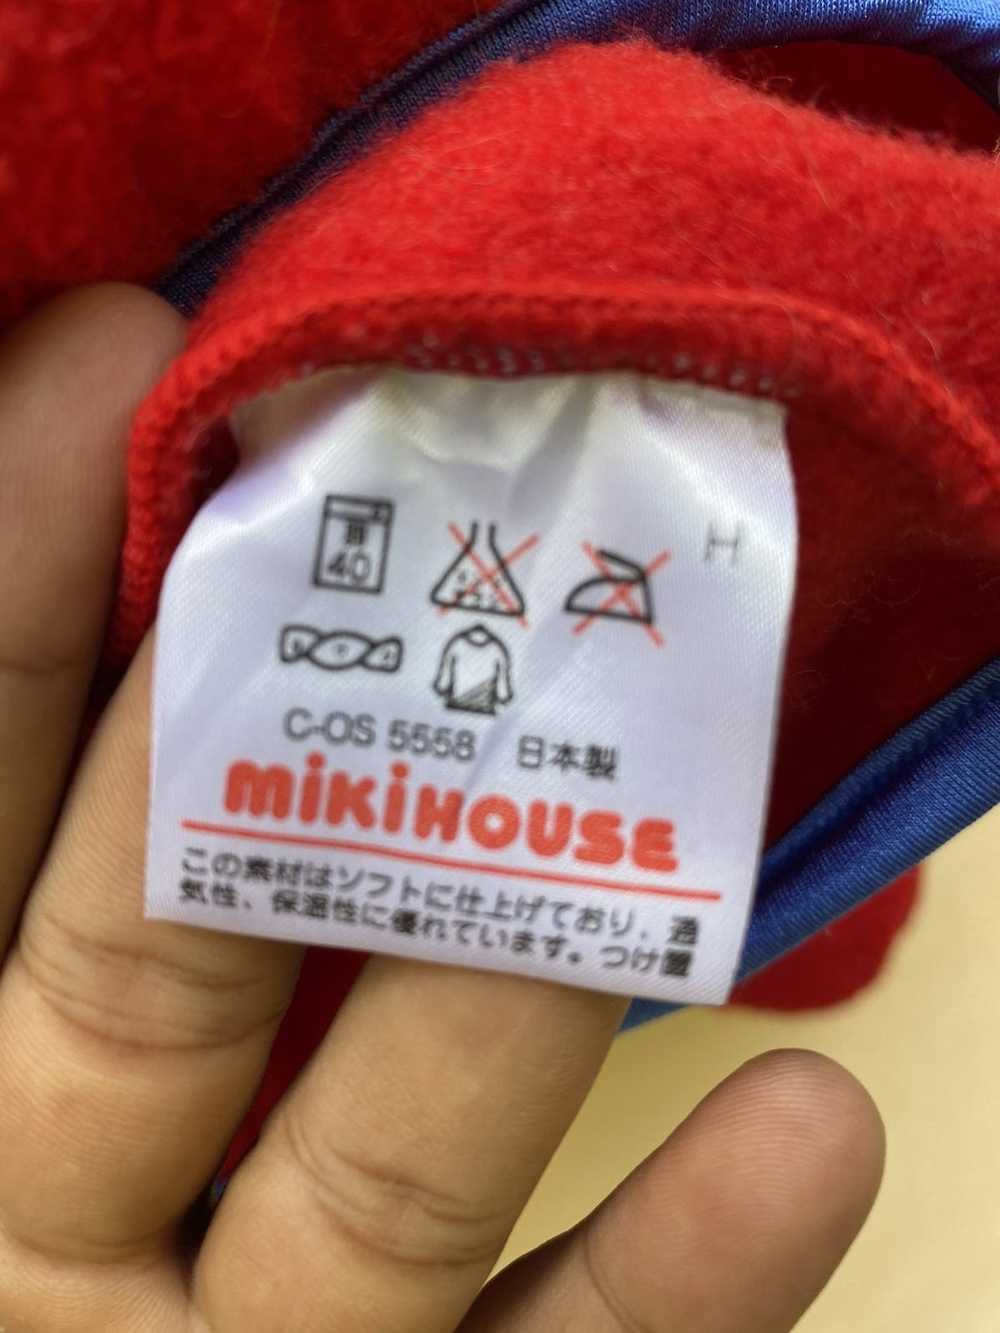 Japanese Brand Miki house fleece sweatshirt - image 6